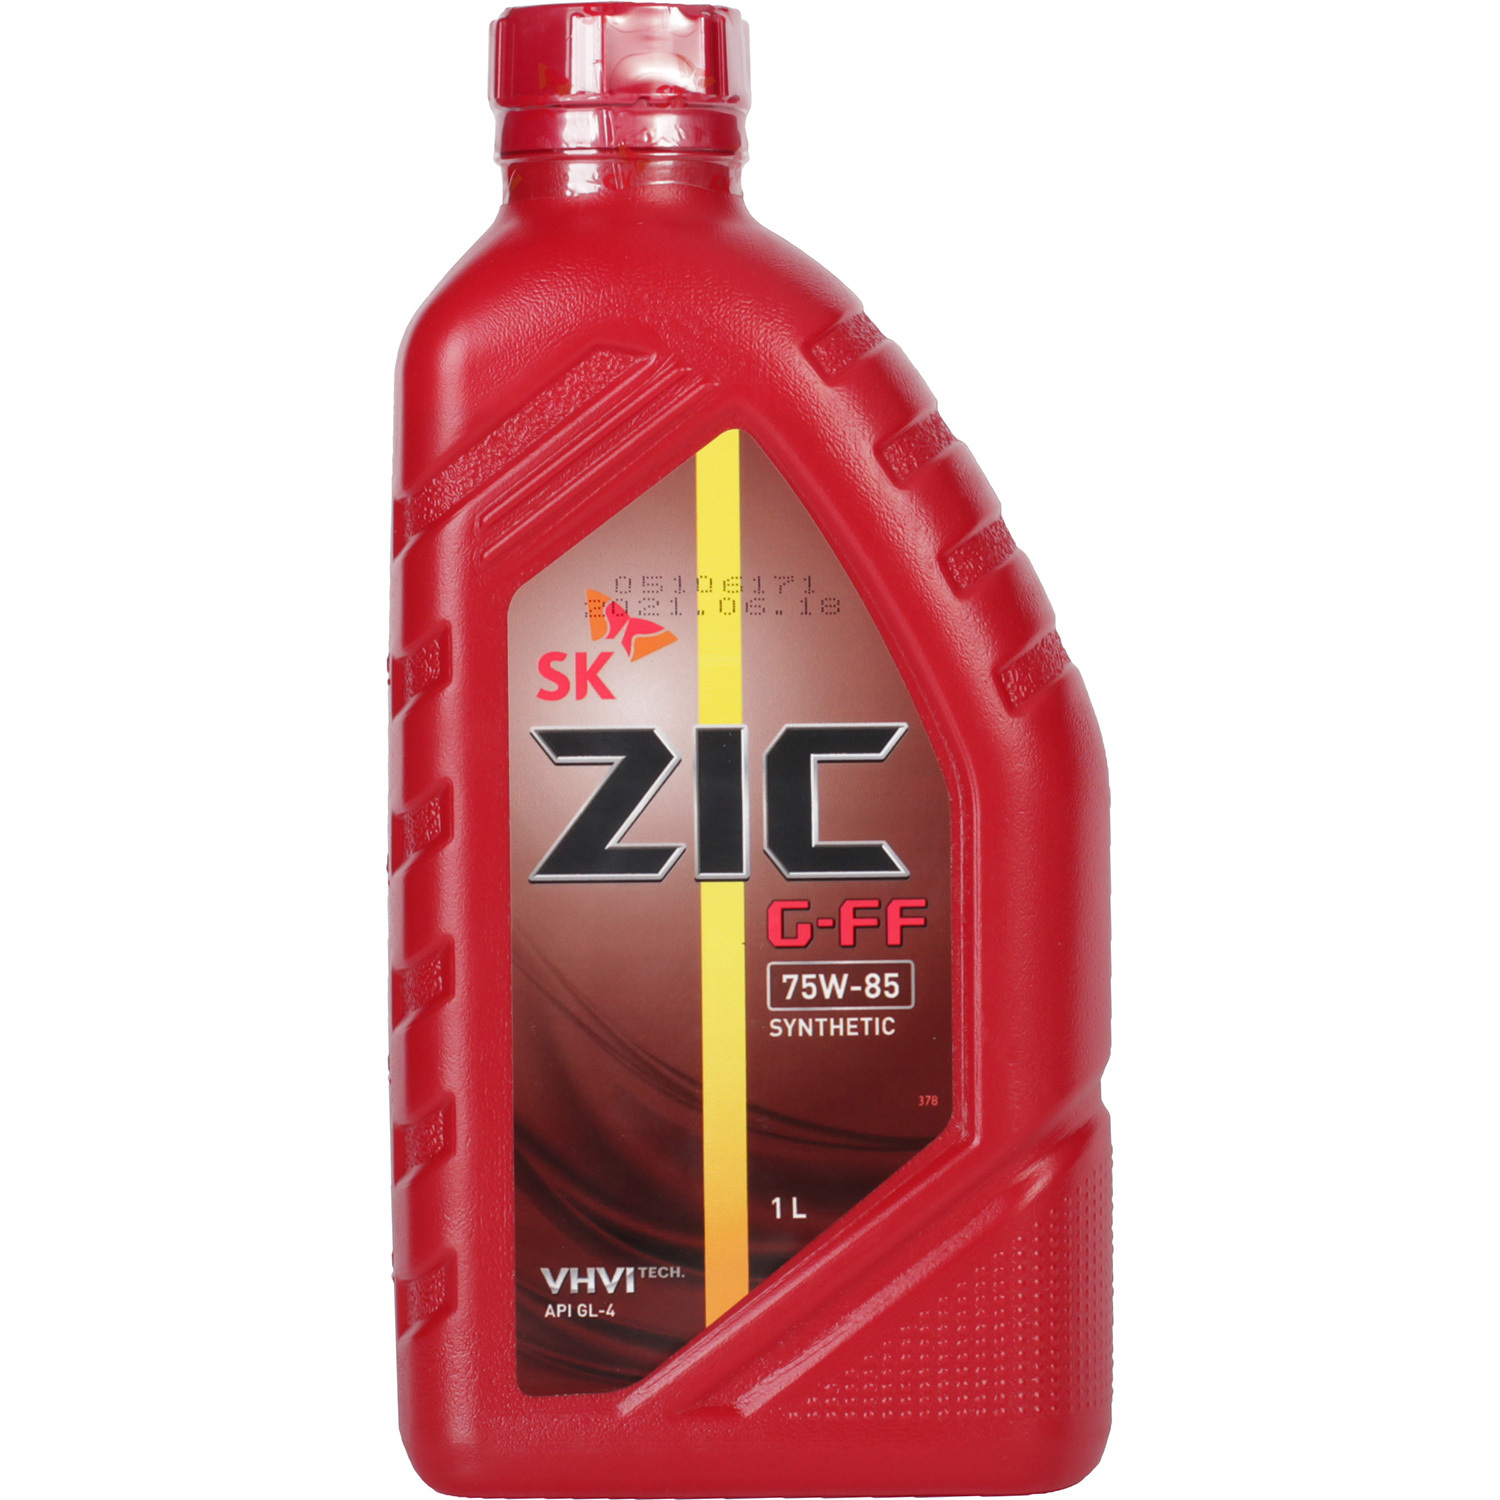 ZIC Трансмиссионное масло ZIC G-FF 75W-85, 1 л трансмиссионное масло eni agip rotra fe 75w 80 60 л